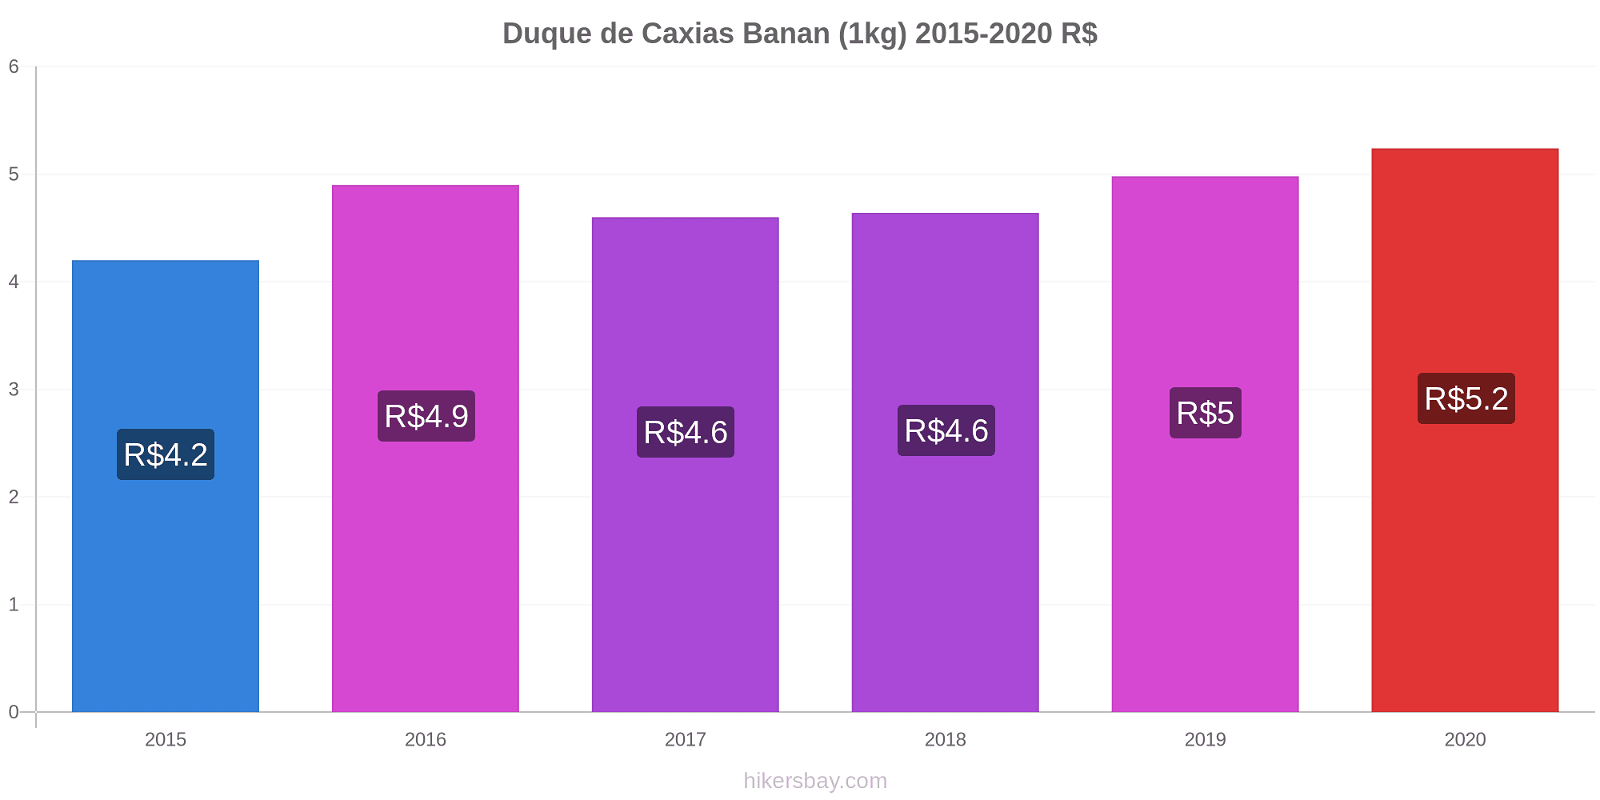 Duque de Caxias prisændringer Banan (1kg) hikersbay.com